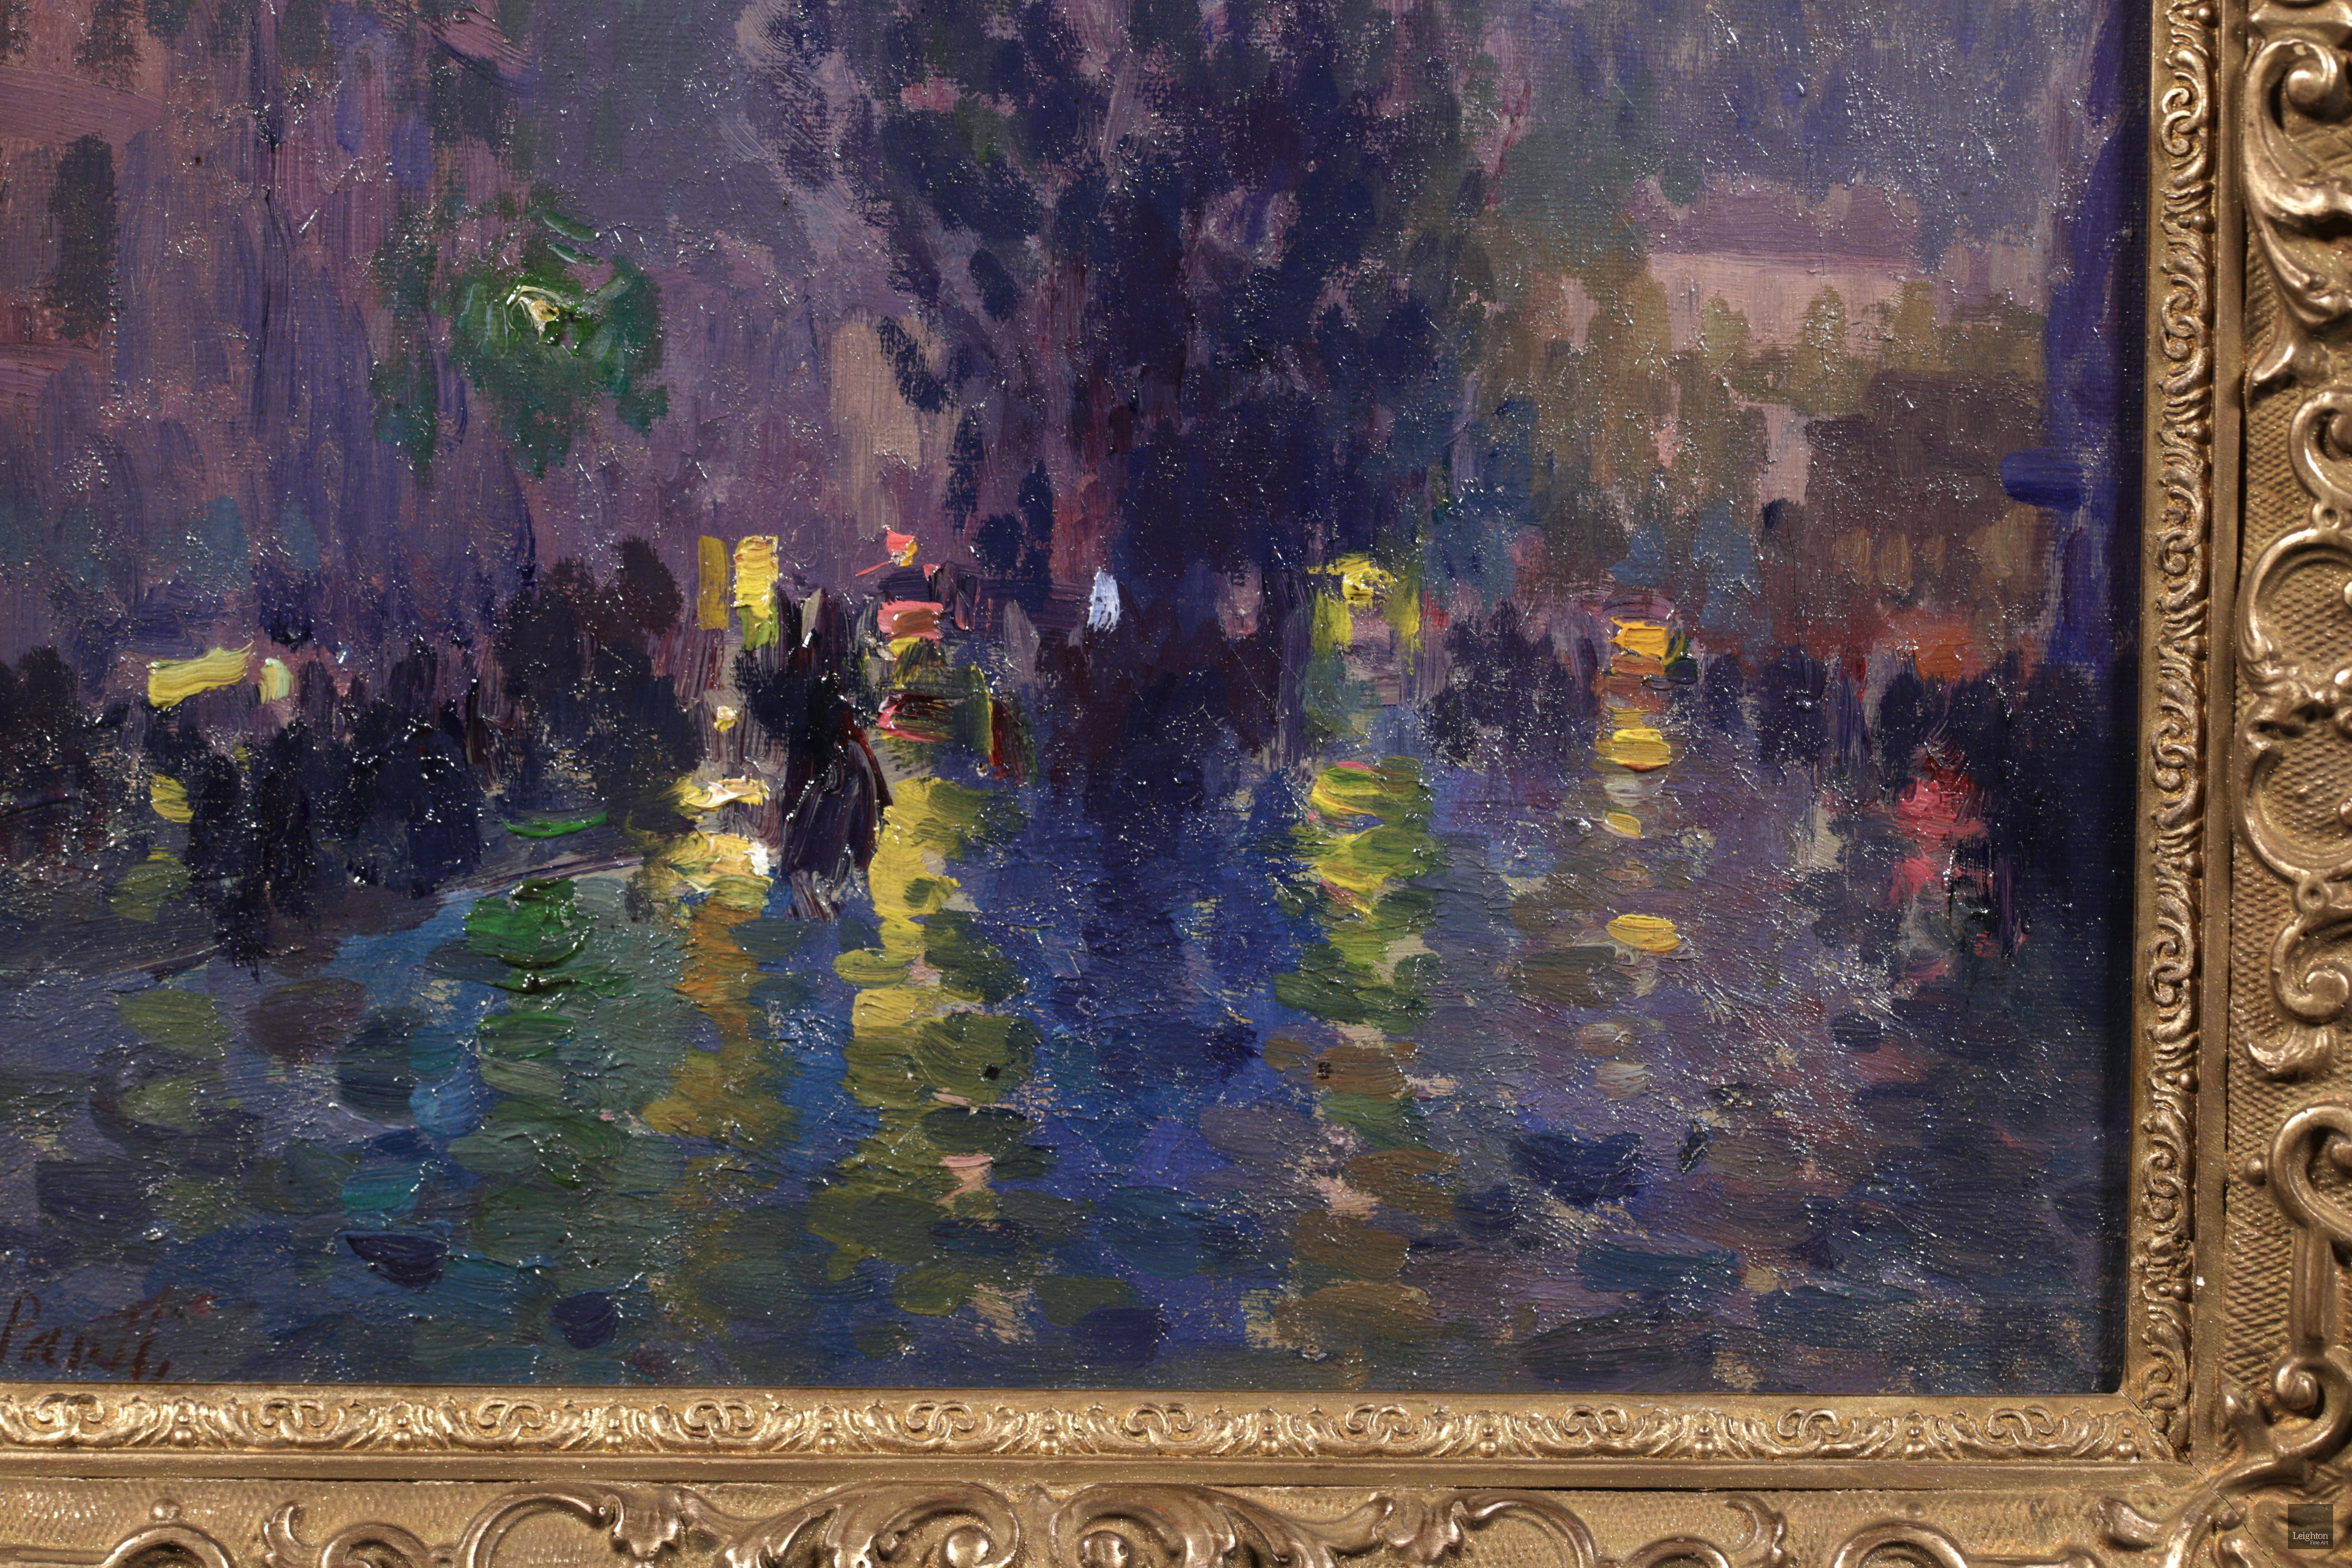 Huile de paysage sur toile signée et datée vers 1900 par le peintre post-impressionniste français Elie Anatole Pavil. Cette œuvre étonnante dépeint un paysage urbain nocturne et pluvieux. Des silhouettes ombragées se promènent sur les façades des